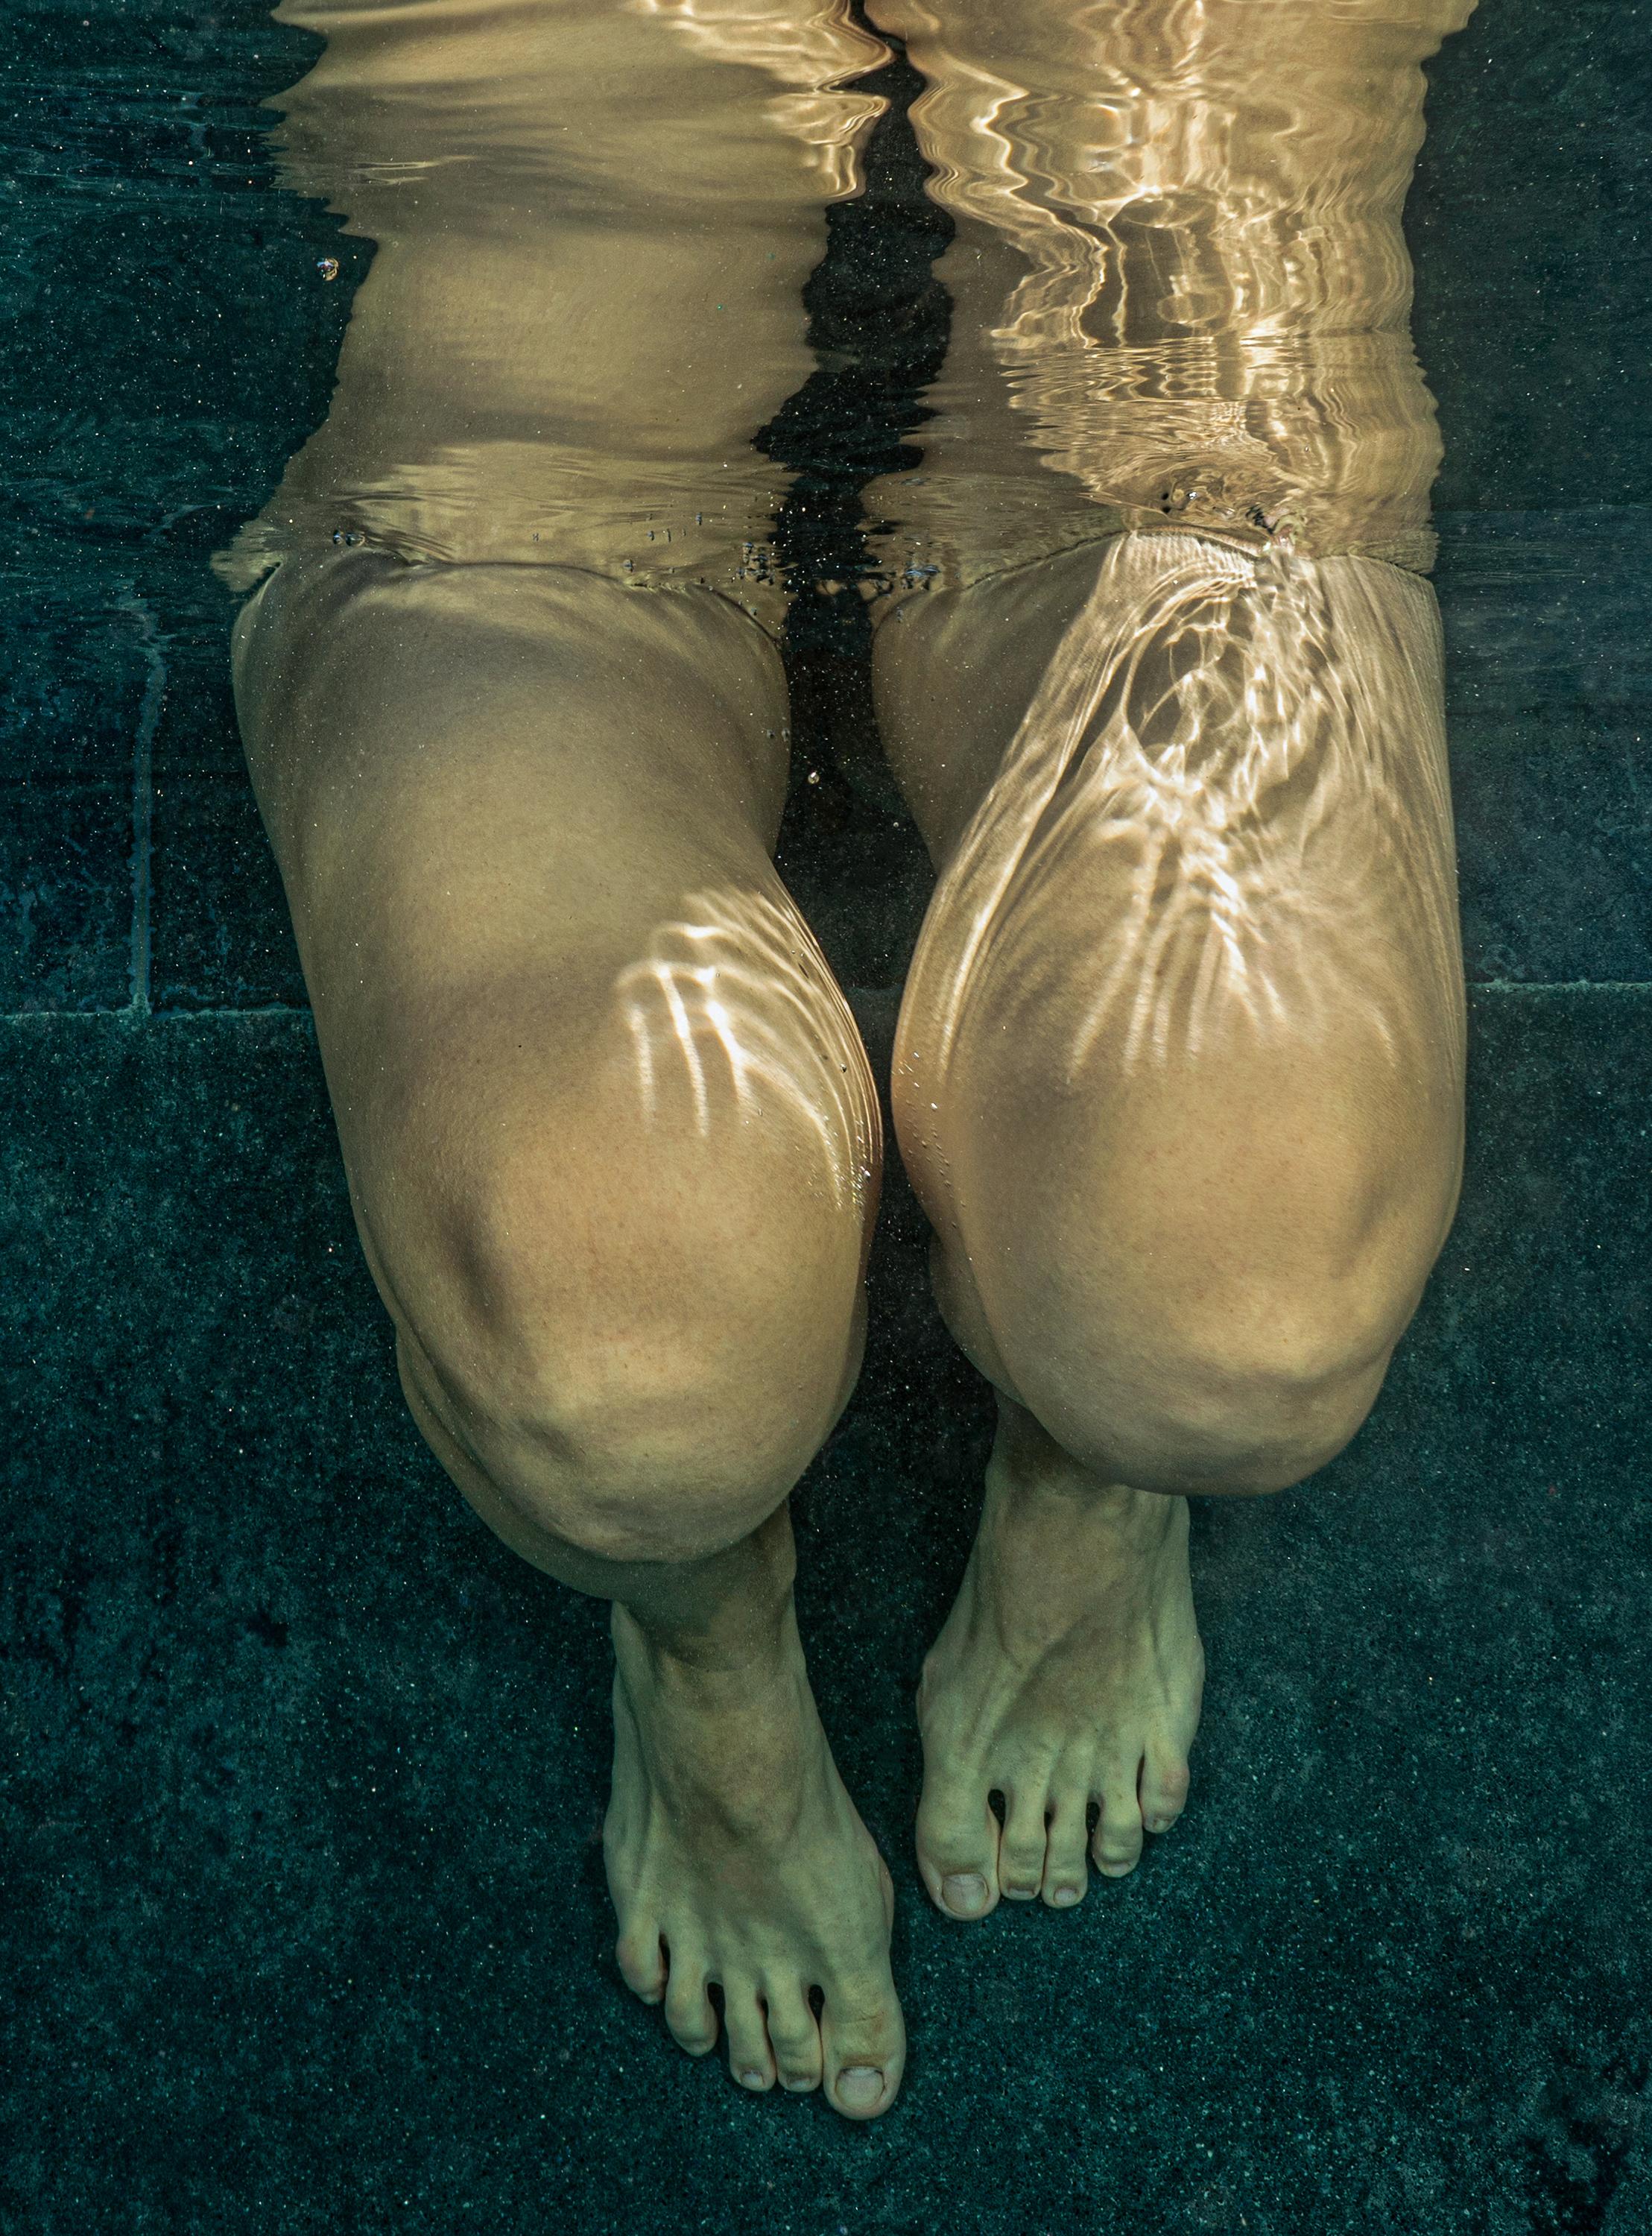 Split - photographie de nu sous-marin - tirage pigmentaire d'archives 17x24